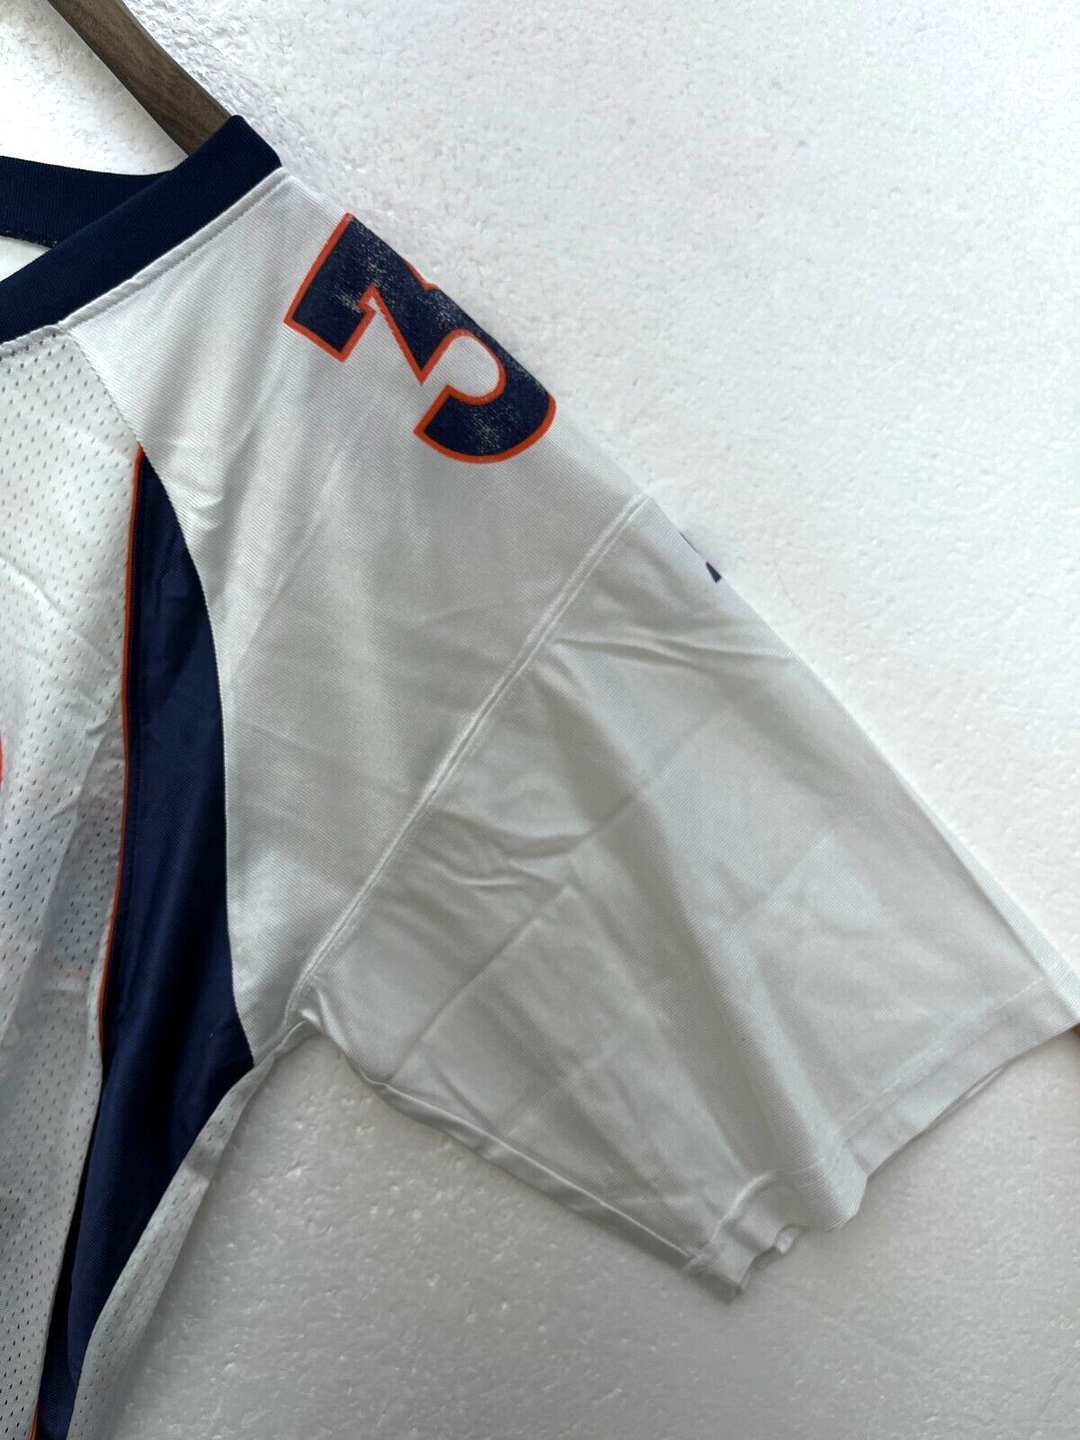 #30 Terrell Davis Denver Broncos Starter Vintage Football Jersey Size 48 NFL 90s